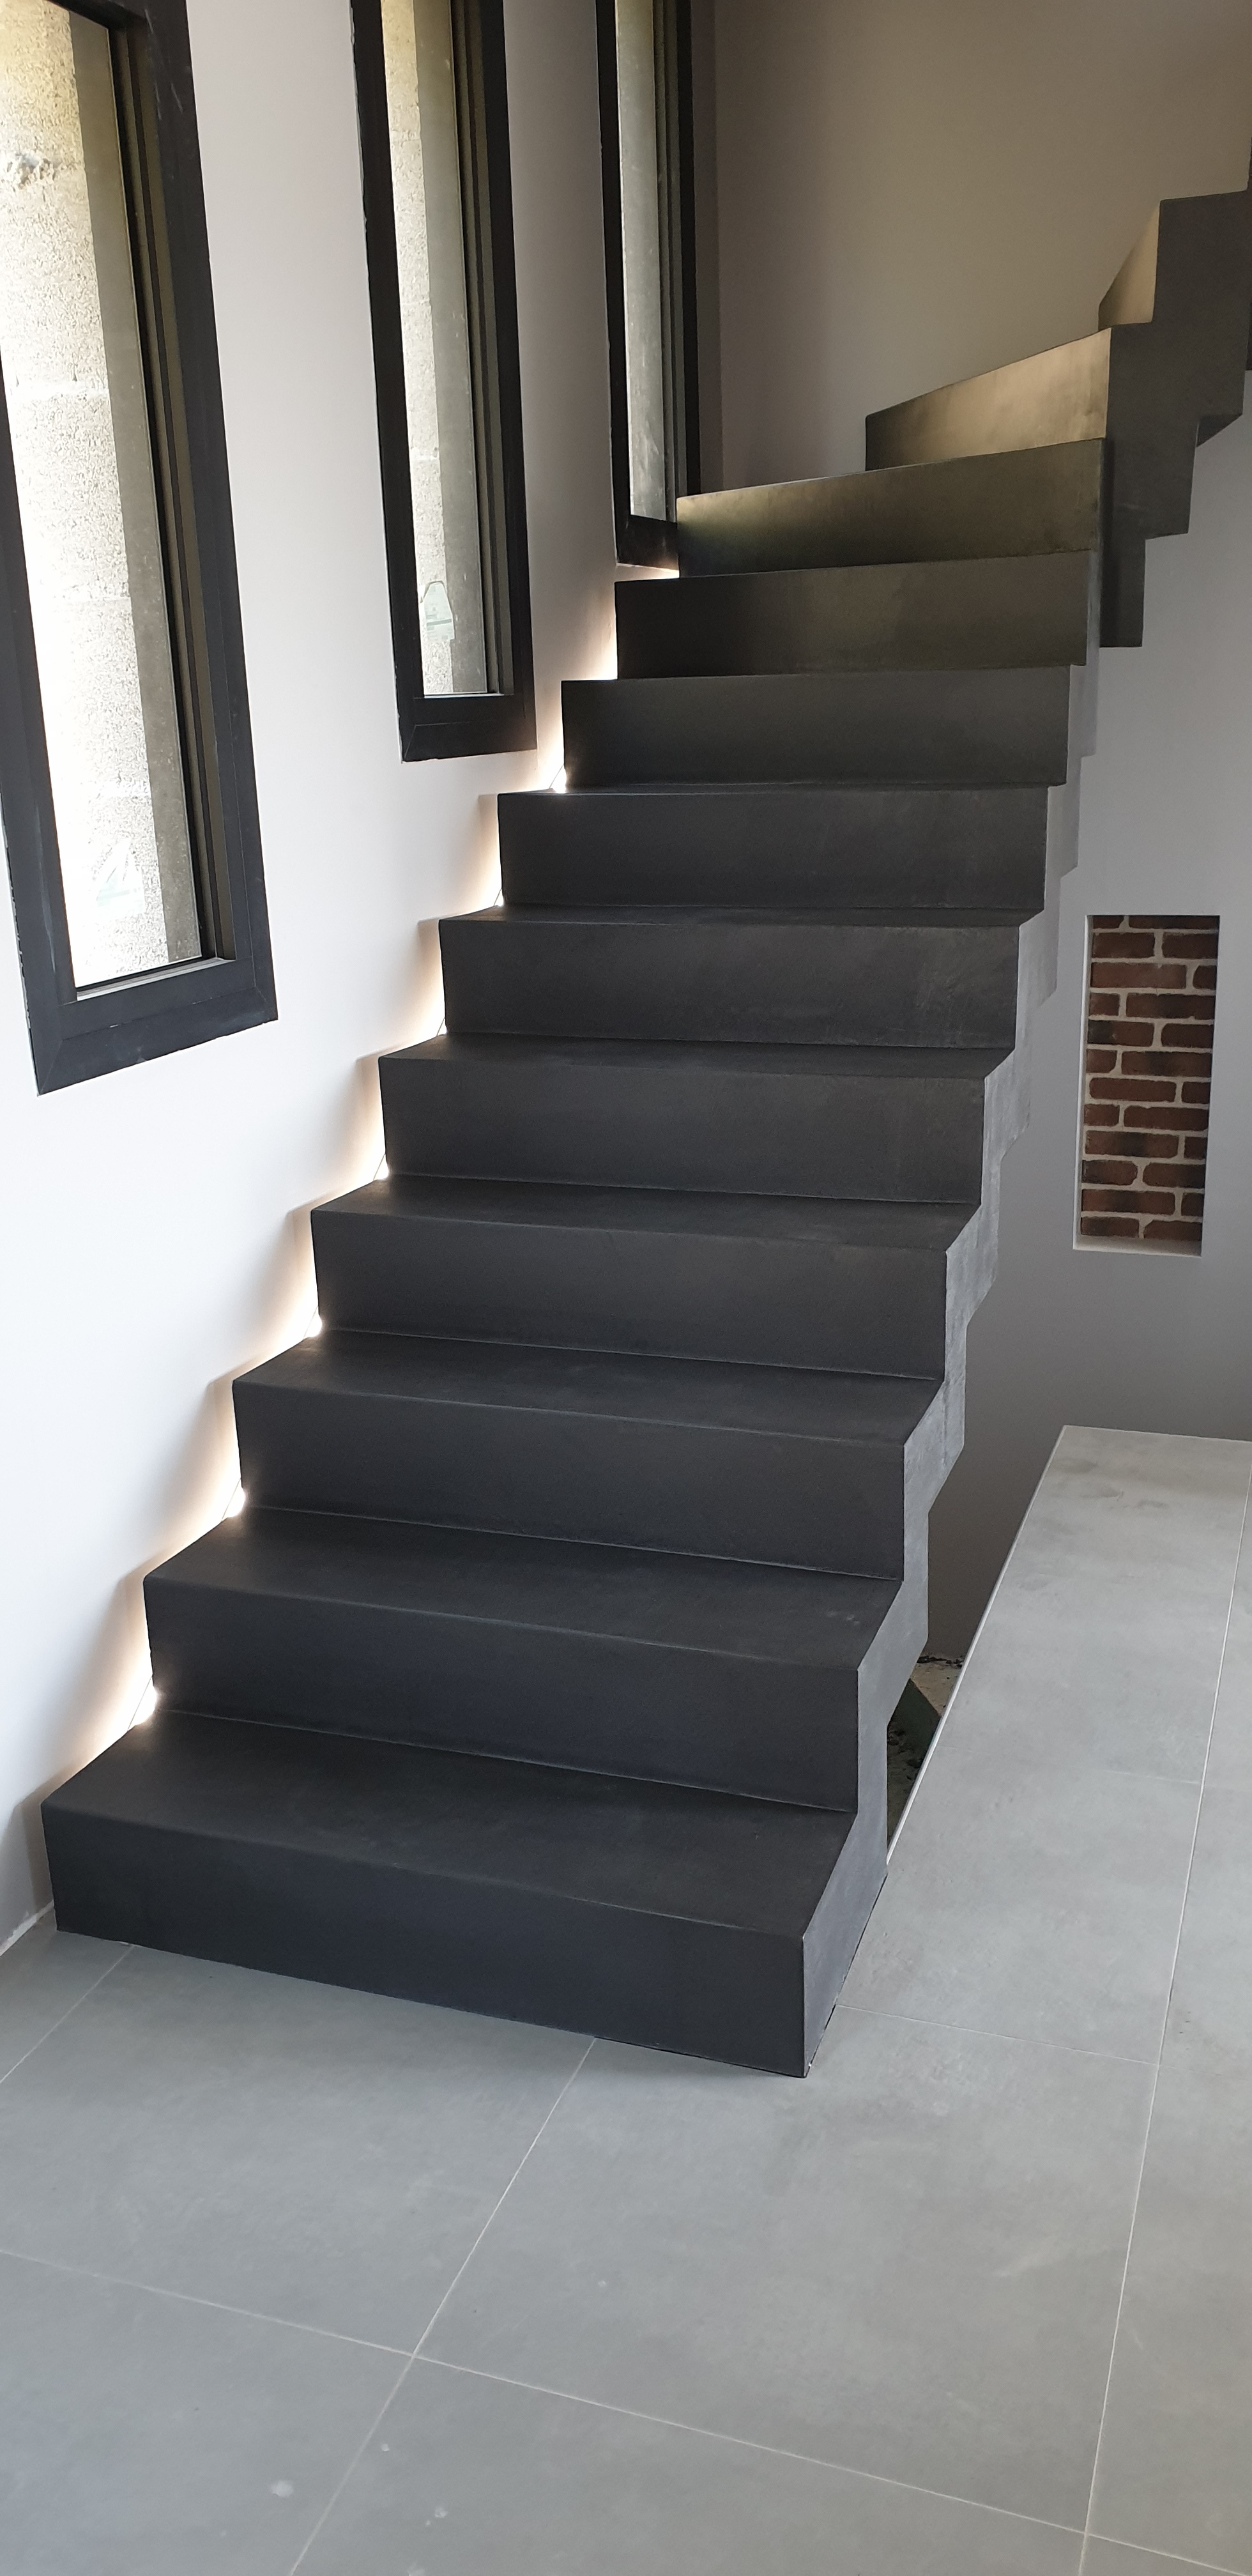 Application d'un béton ciré gris anthracite sur un escalier moderne décollé du mur